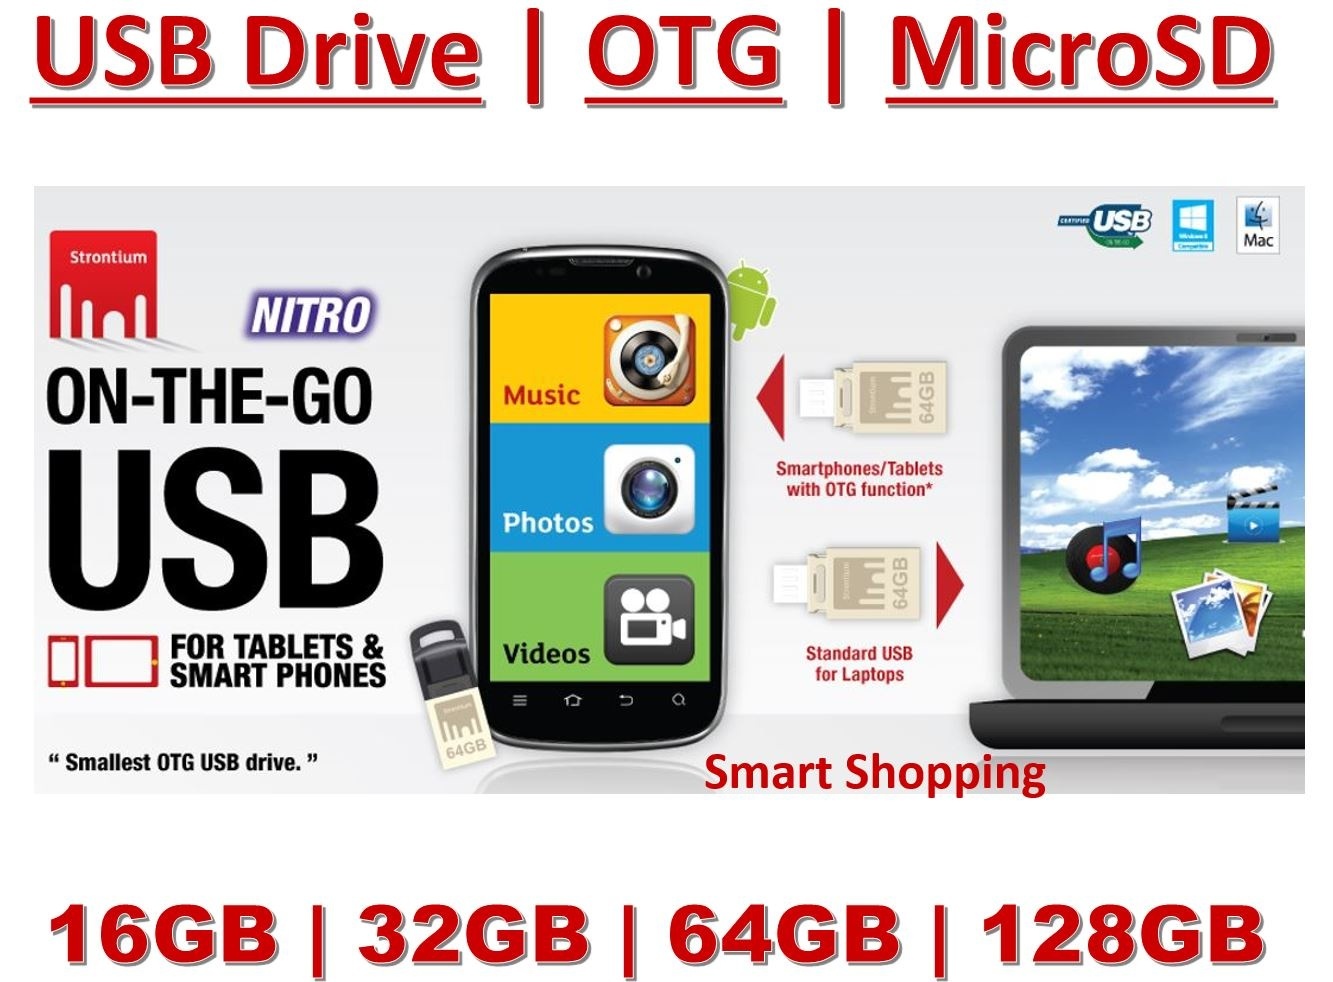 【クリックで詳細表示】Strontium Micro SD Class 10 OTG Memory Card MicroSD SanDisk USB 3.0 Dual Pendrive ON THE GO hdd 16gb 32gb 64gb 128gb free otg card reader Singapore stock